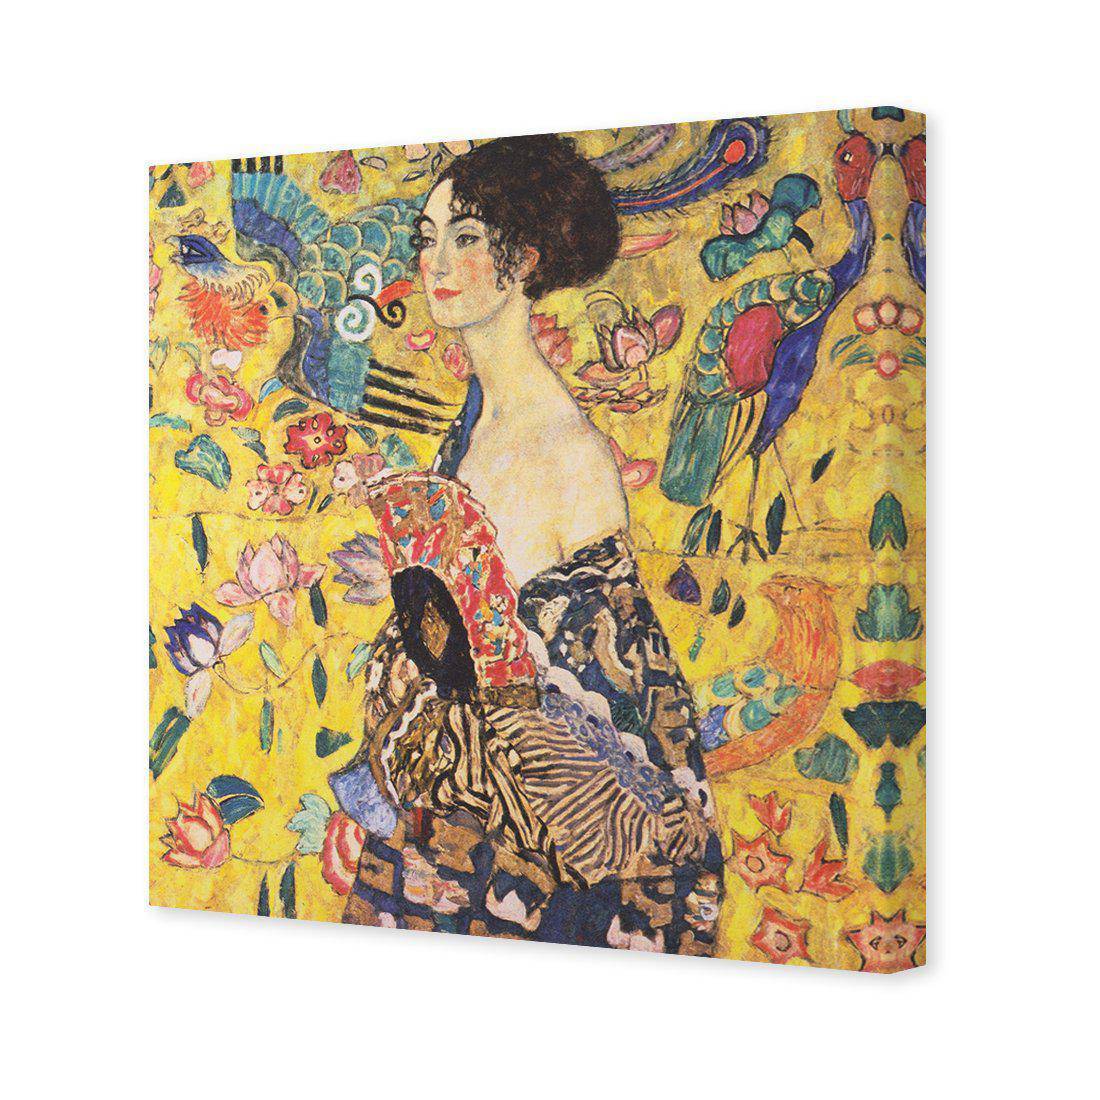 Lady With Fan - Gustav Klimt Canvas Art-Canvas-Wall Art Designs-30x30cm-Canvas - No Frame-Wall Art Designs